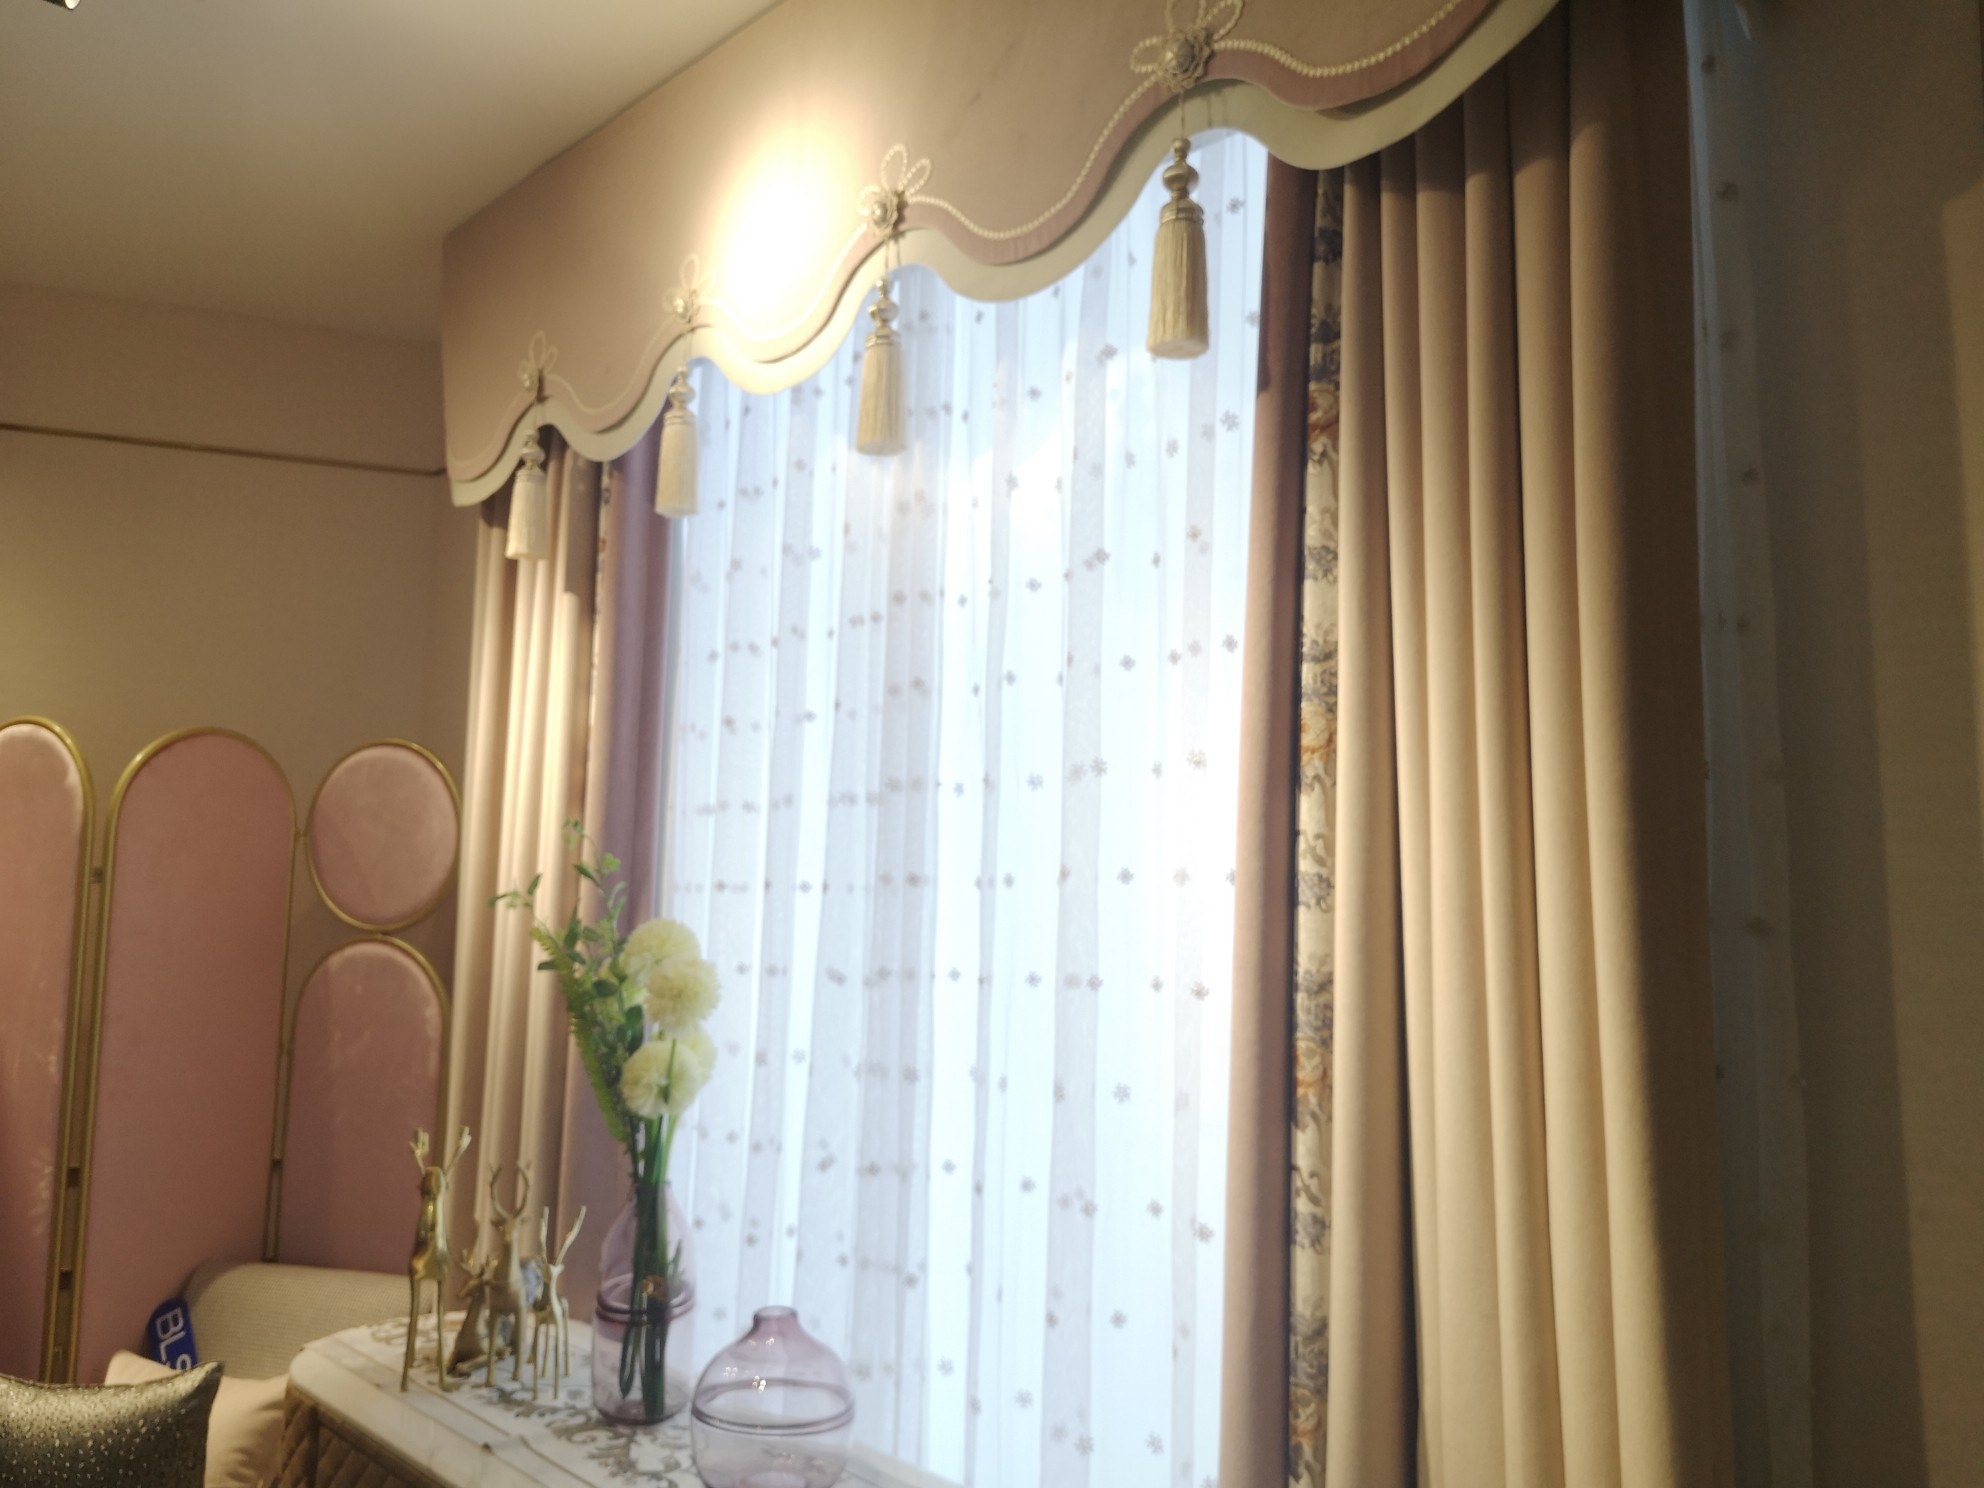 布朗斯少女风欧式风格拼接卧室窗帘高贵大气遮光价格为380元/米图